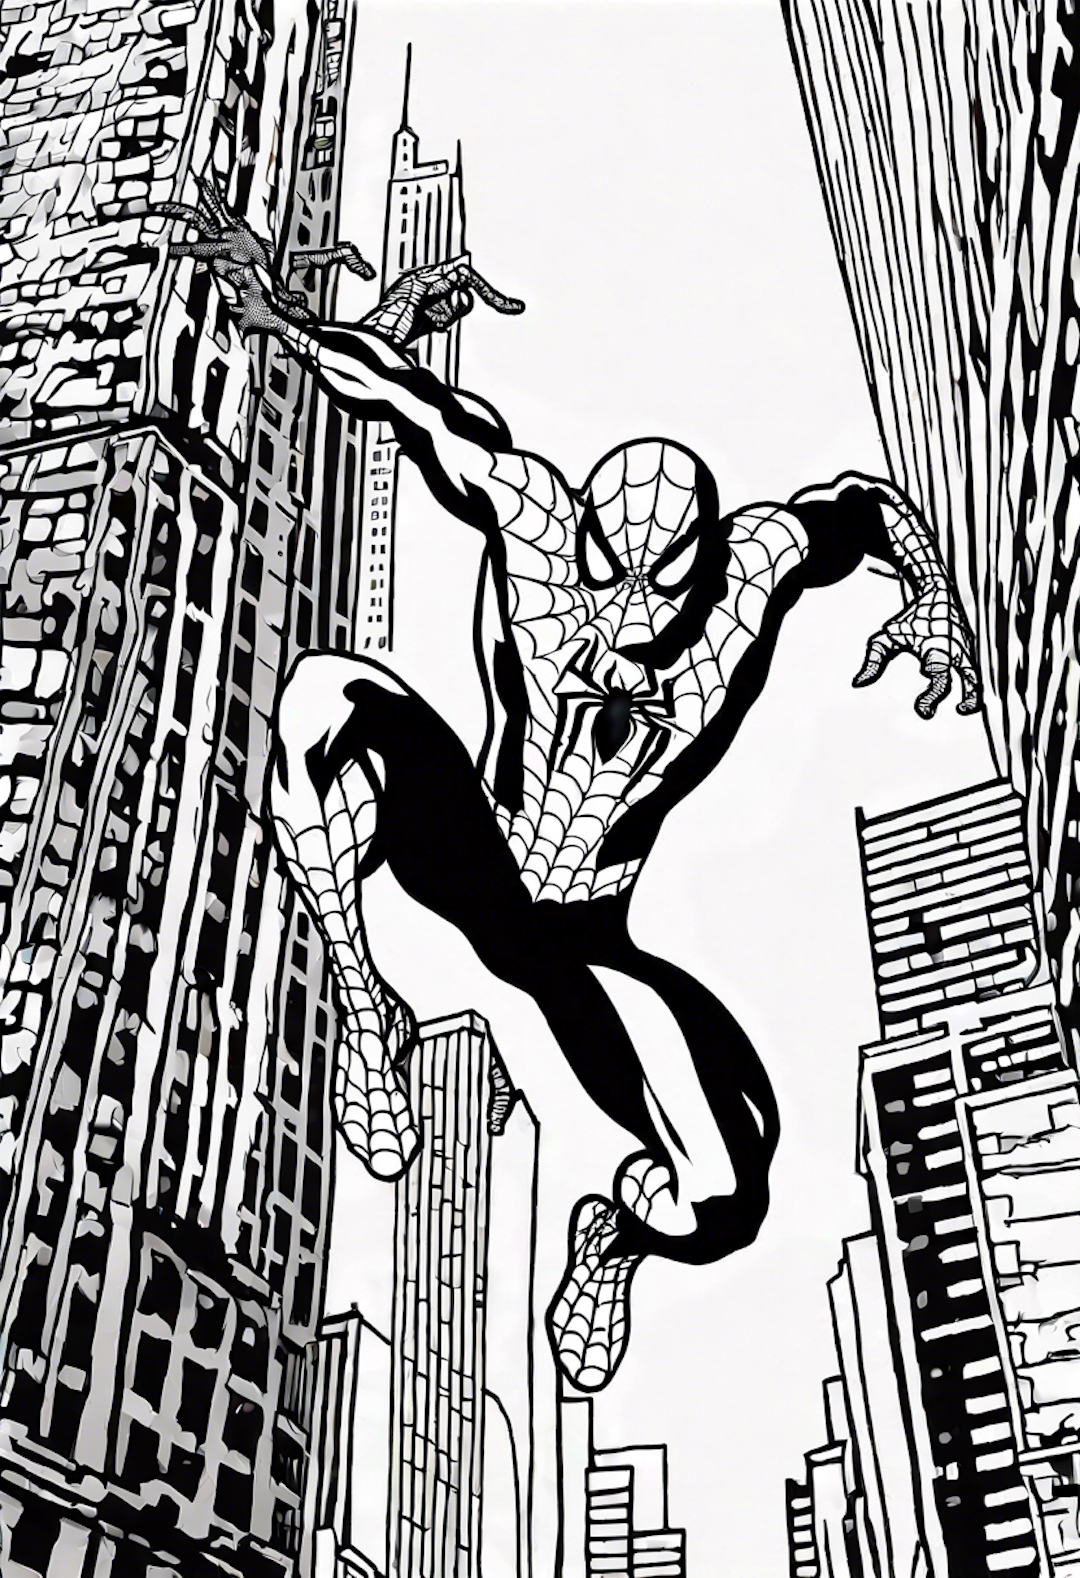 Spiderman Swinging Through The Concrete Jungle Of Manhattan